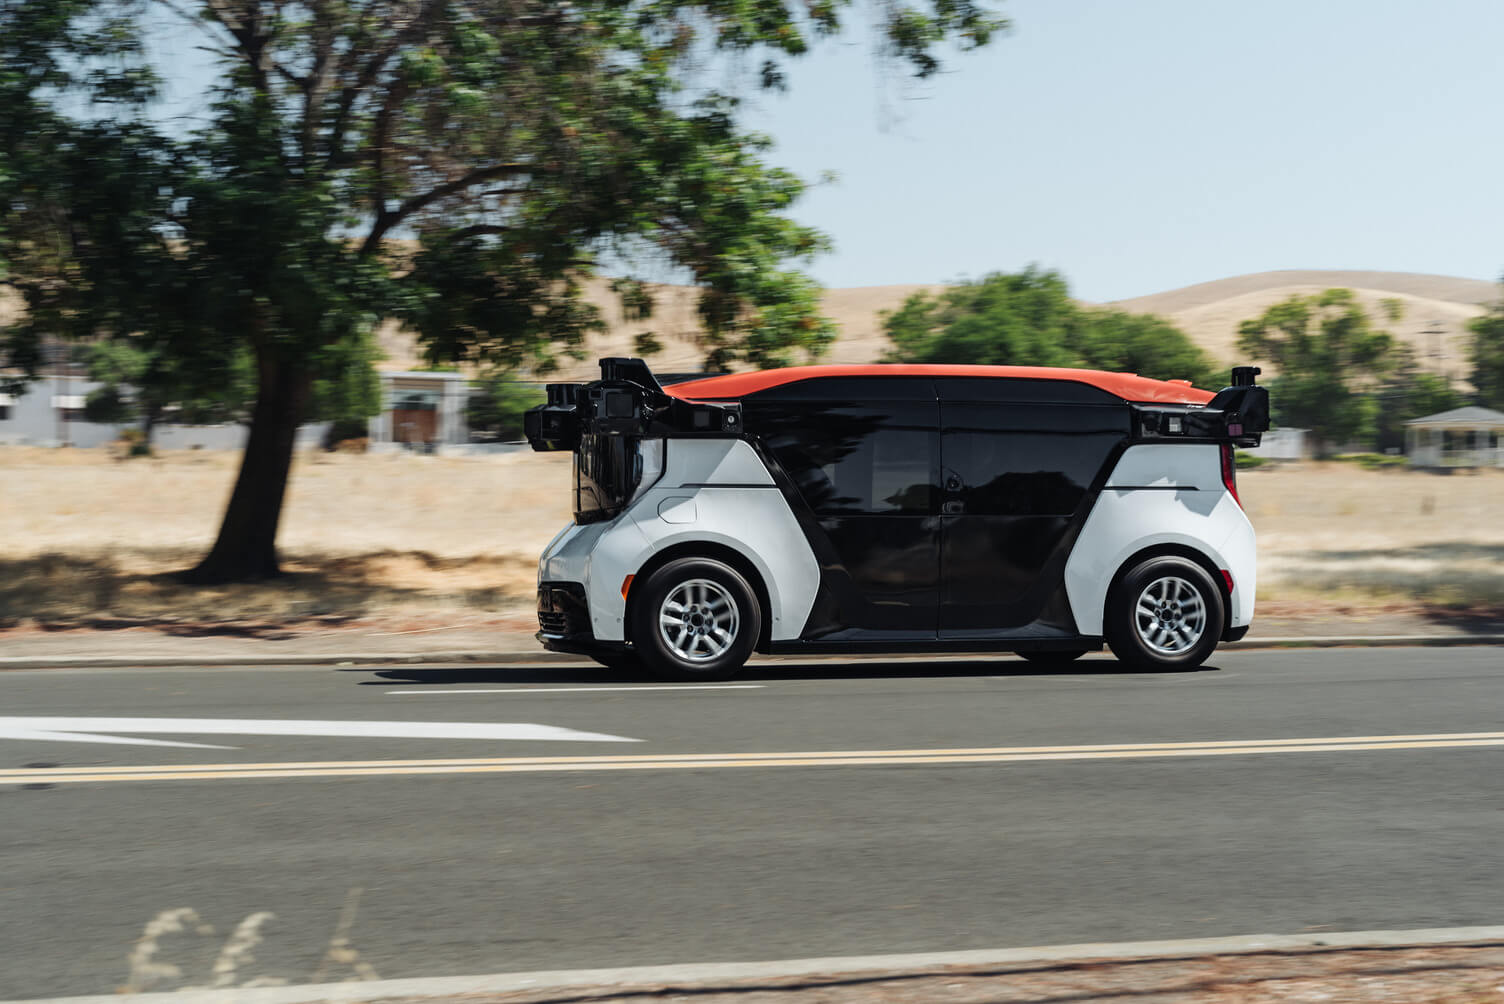 Mary Barra von GM trifft sich mit US-Senatoren, um über autonome Fahrzeuge zu diskutieren